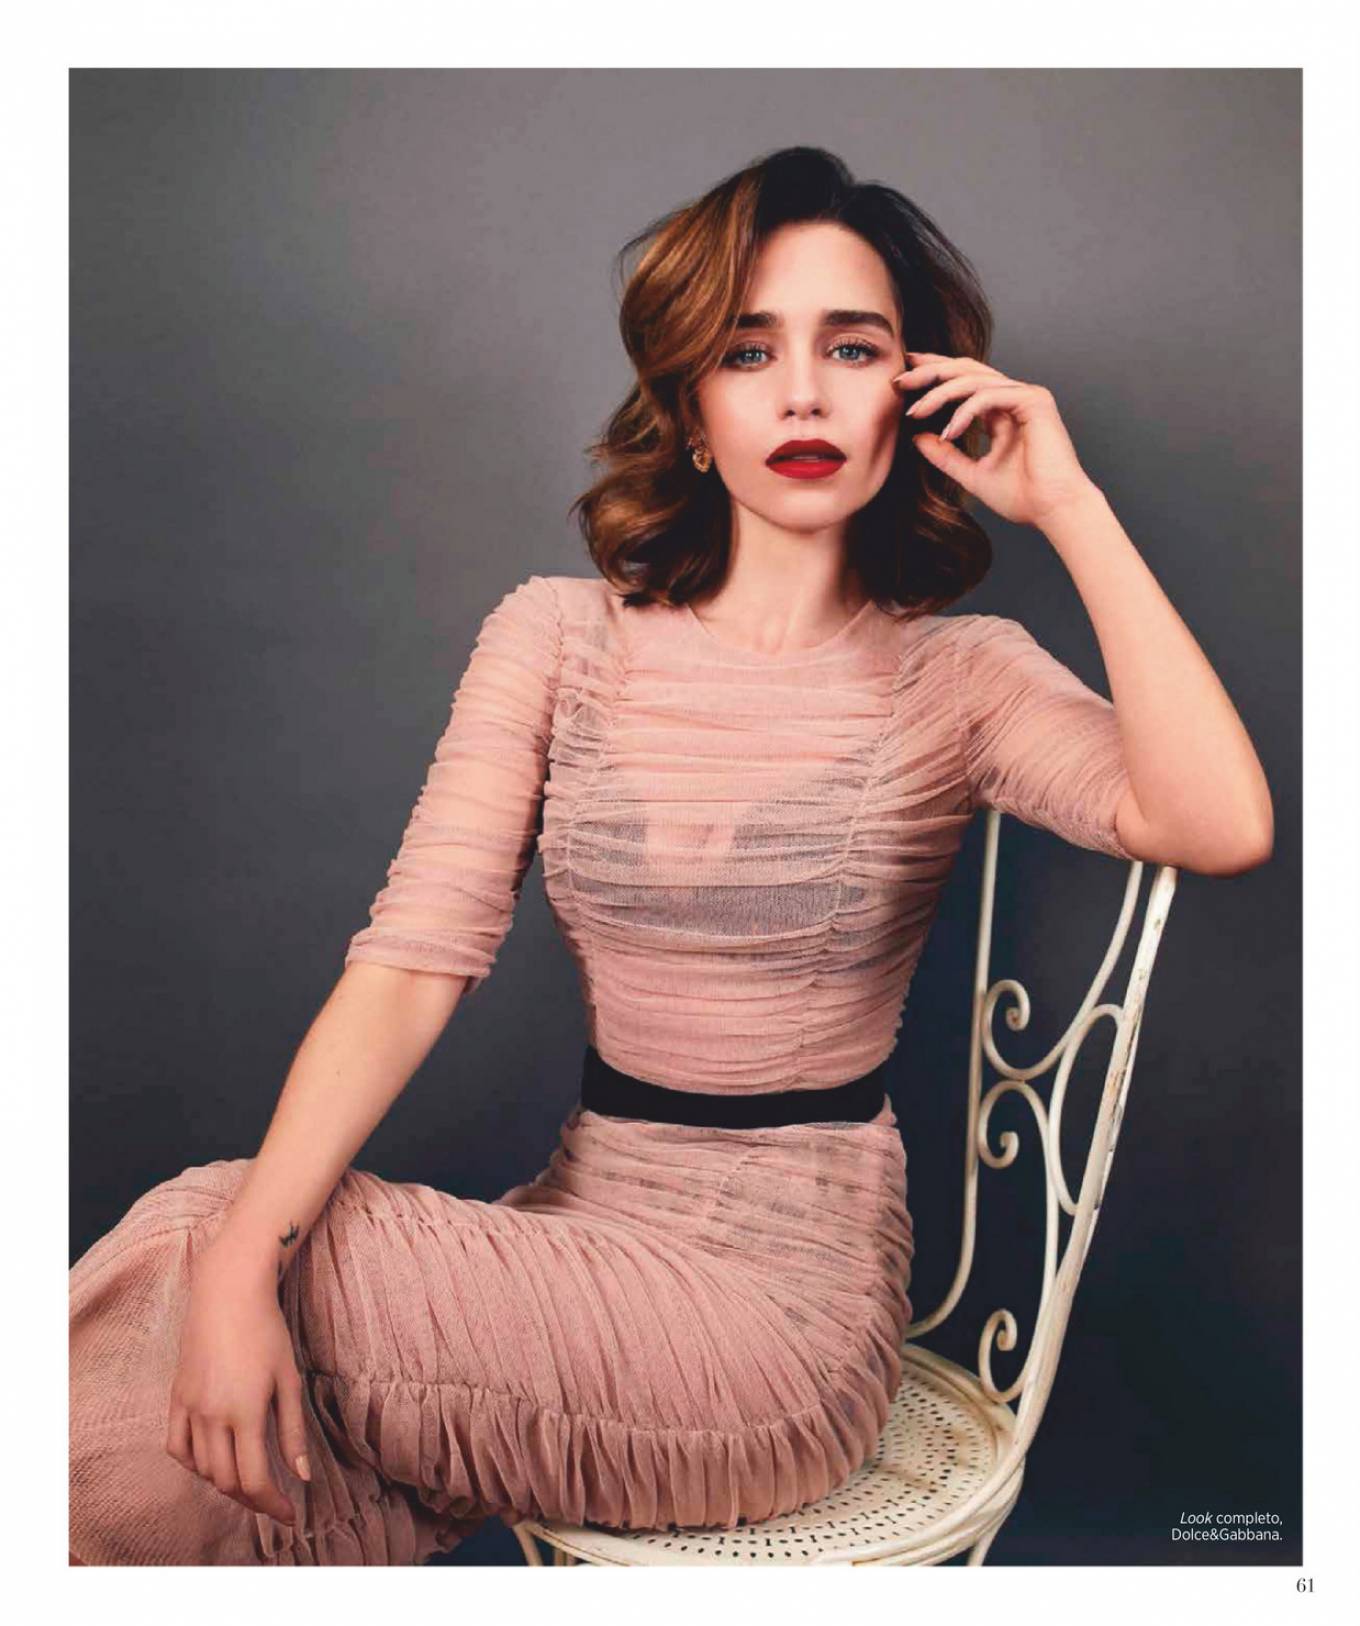 Emilia Clarke Harper Bazaar Wallpapers